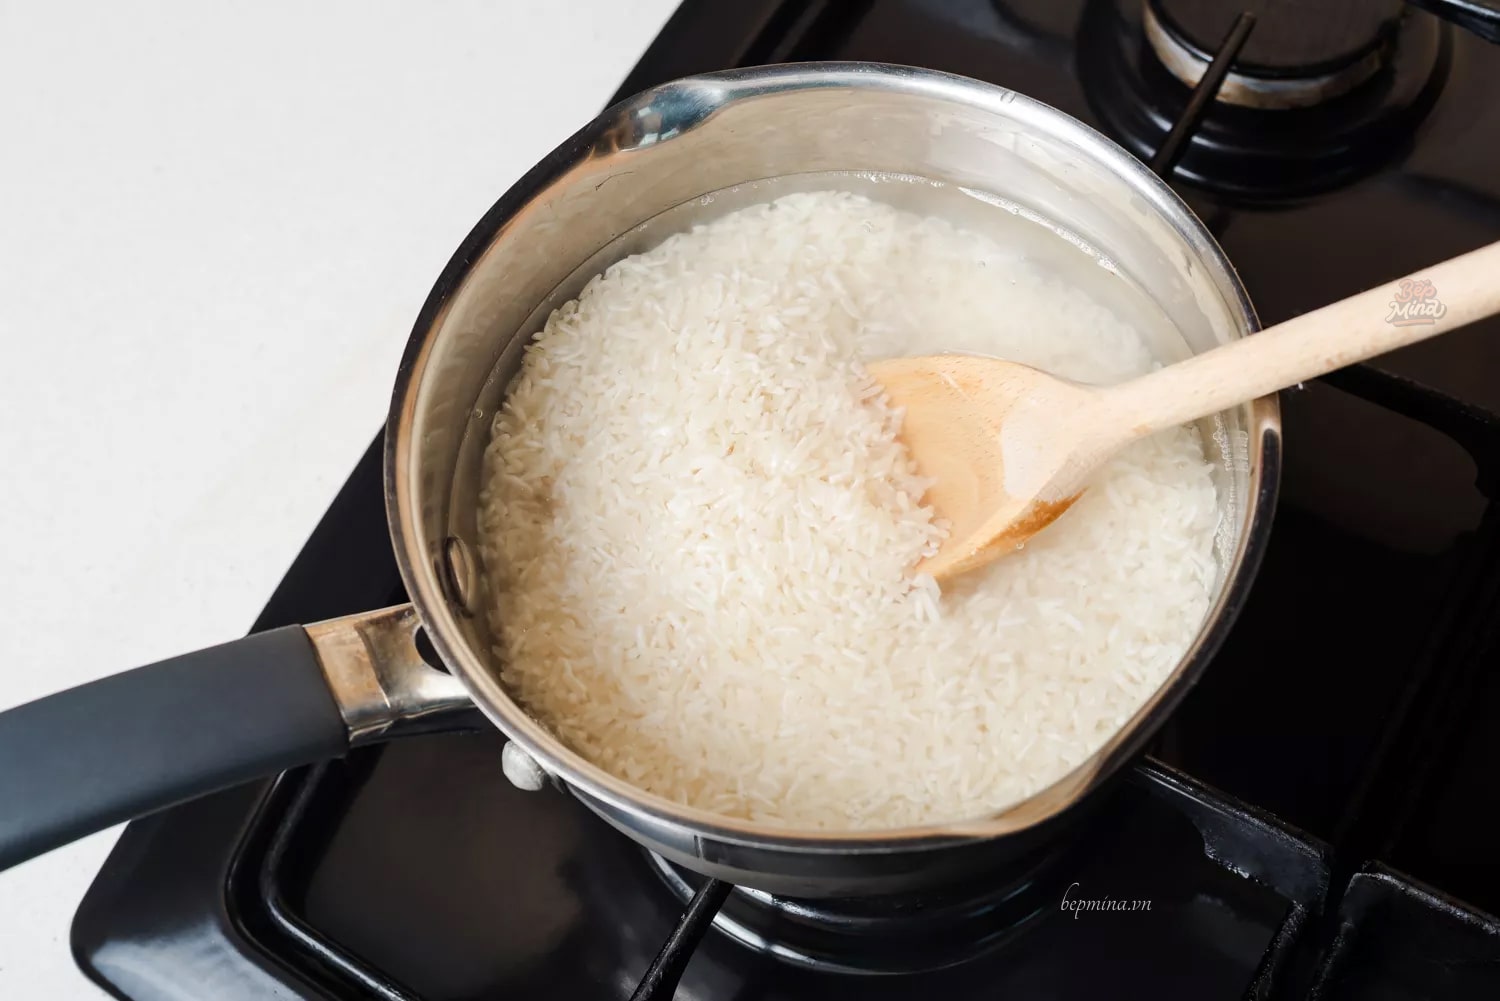 Nấu cơm gạo tấm bằng bếp gas cần lưu ý những gì?